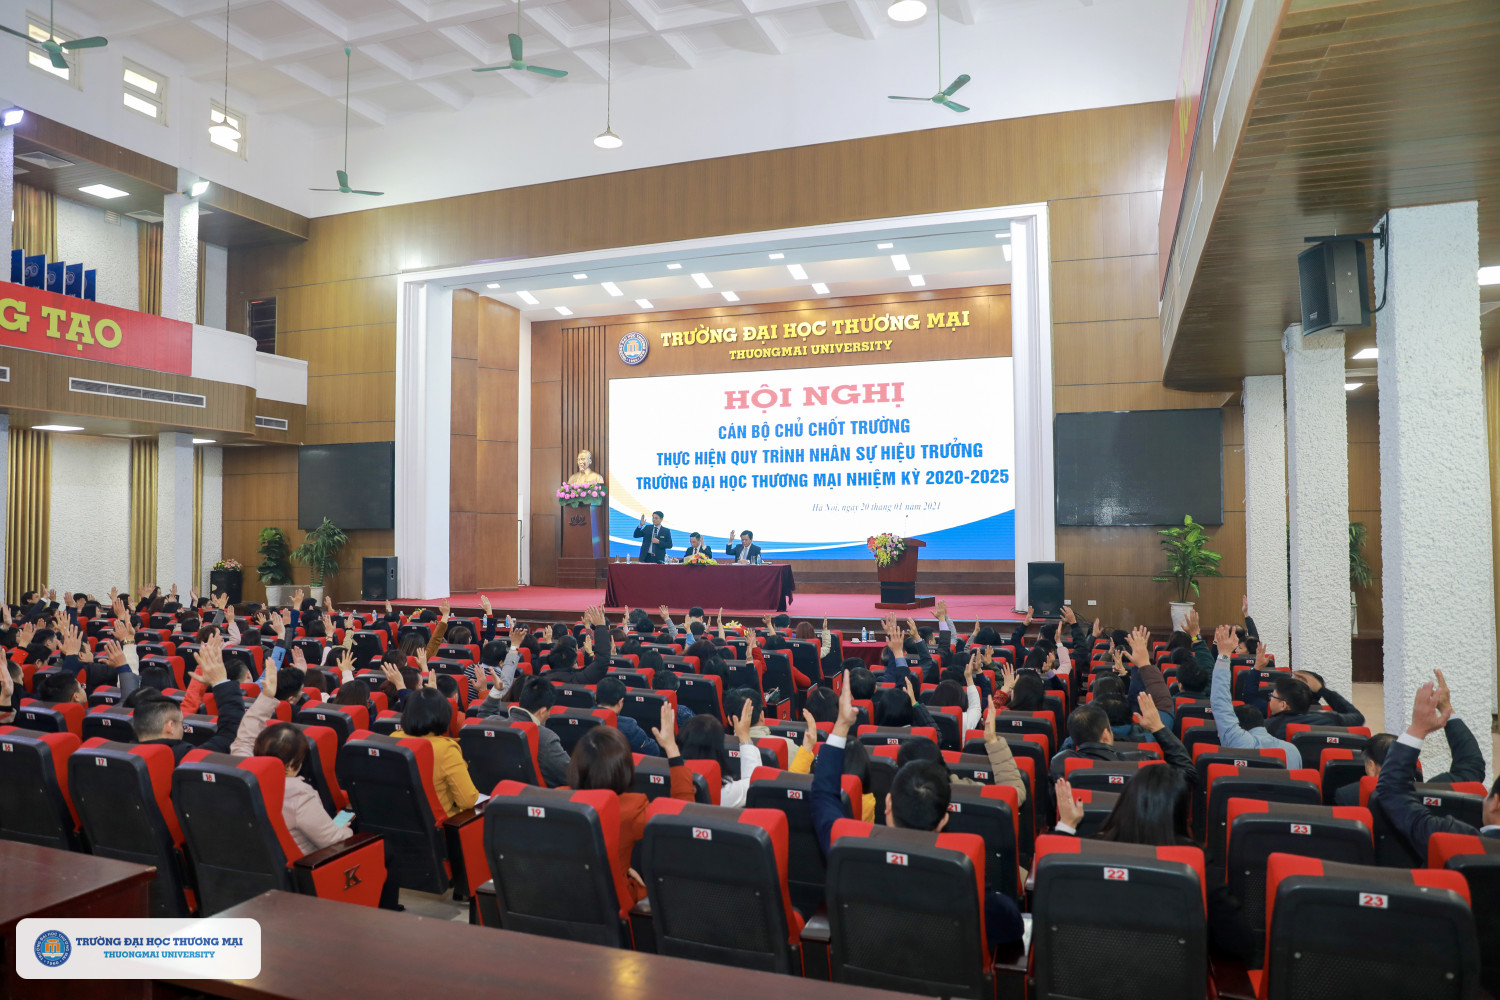 Hội nghị thực hiện quy trình nhân sự Hiệu trưởng trường Đại học Thương mại nhiệm kỳ 2020 - 2025